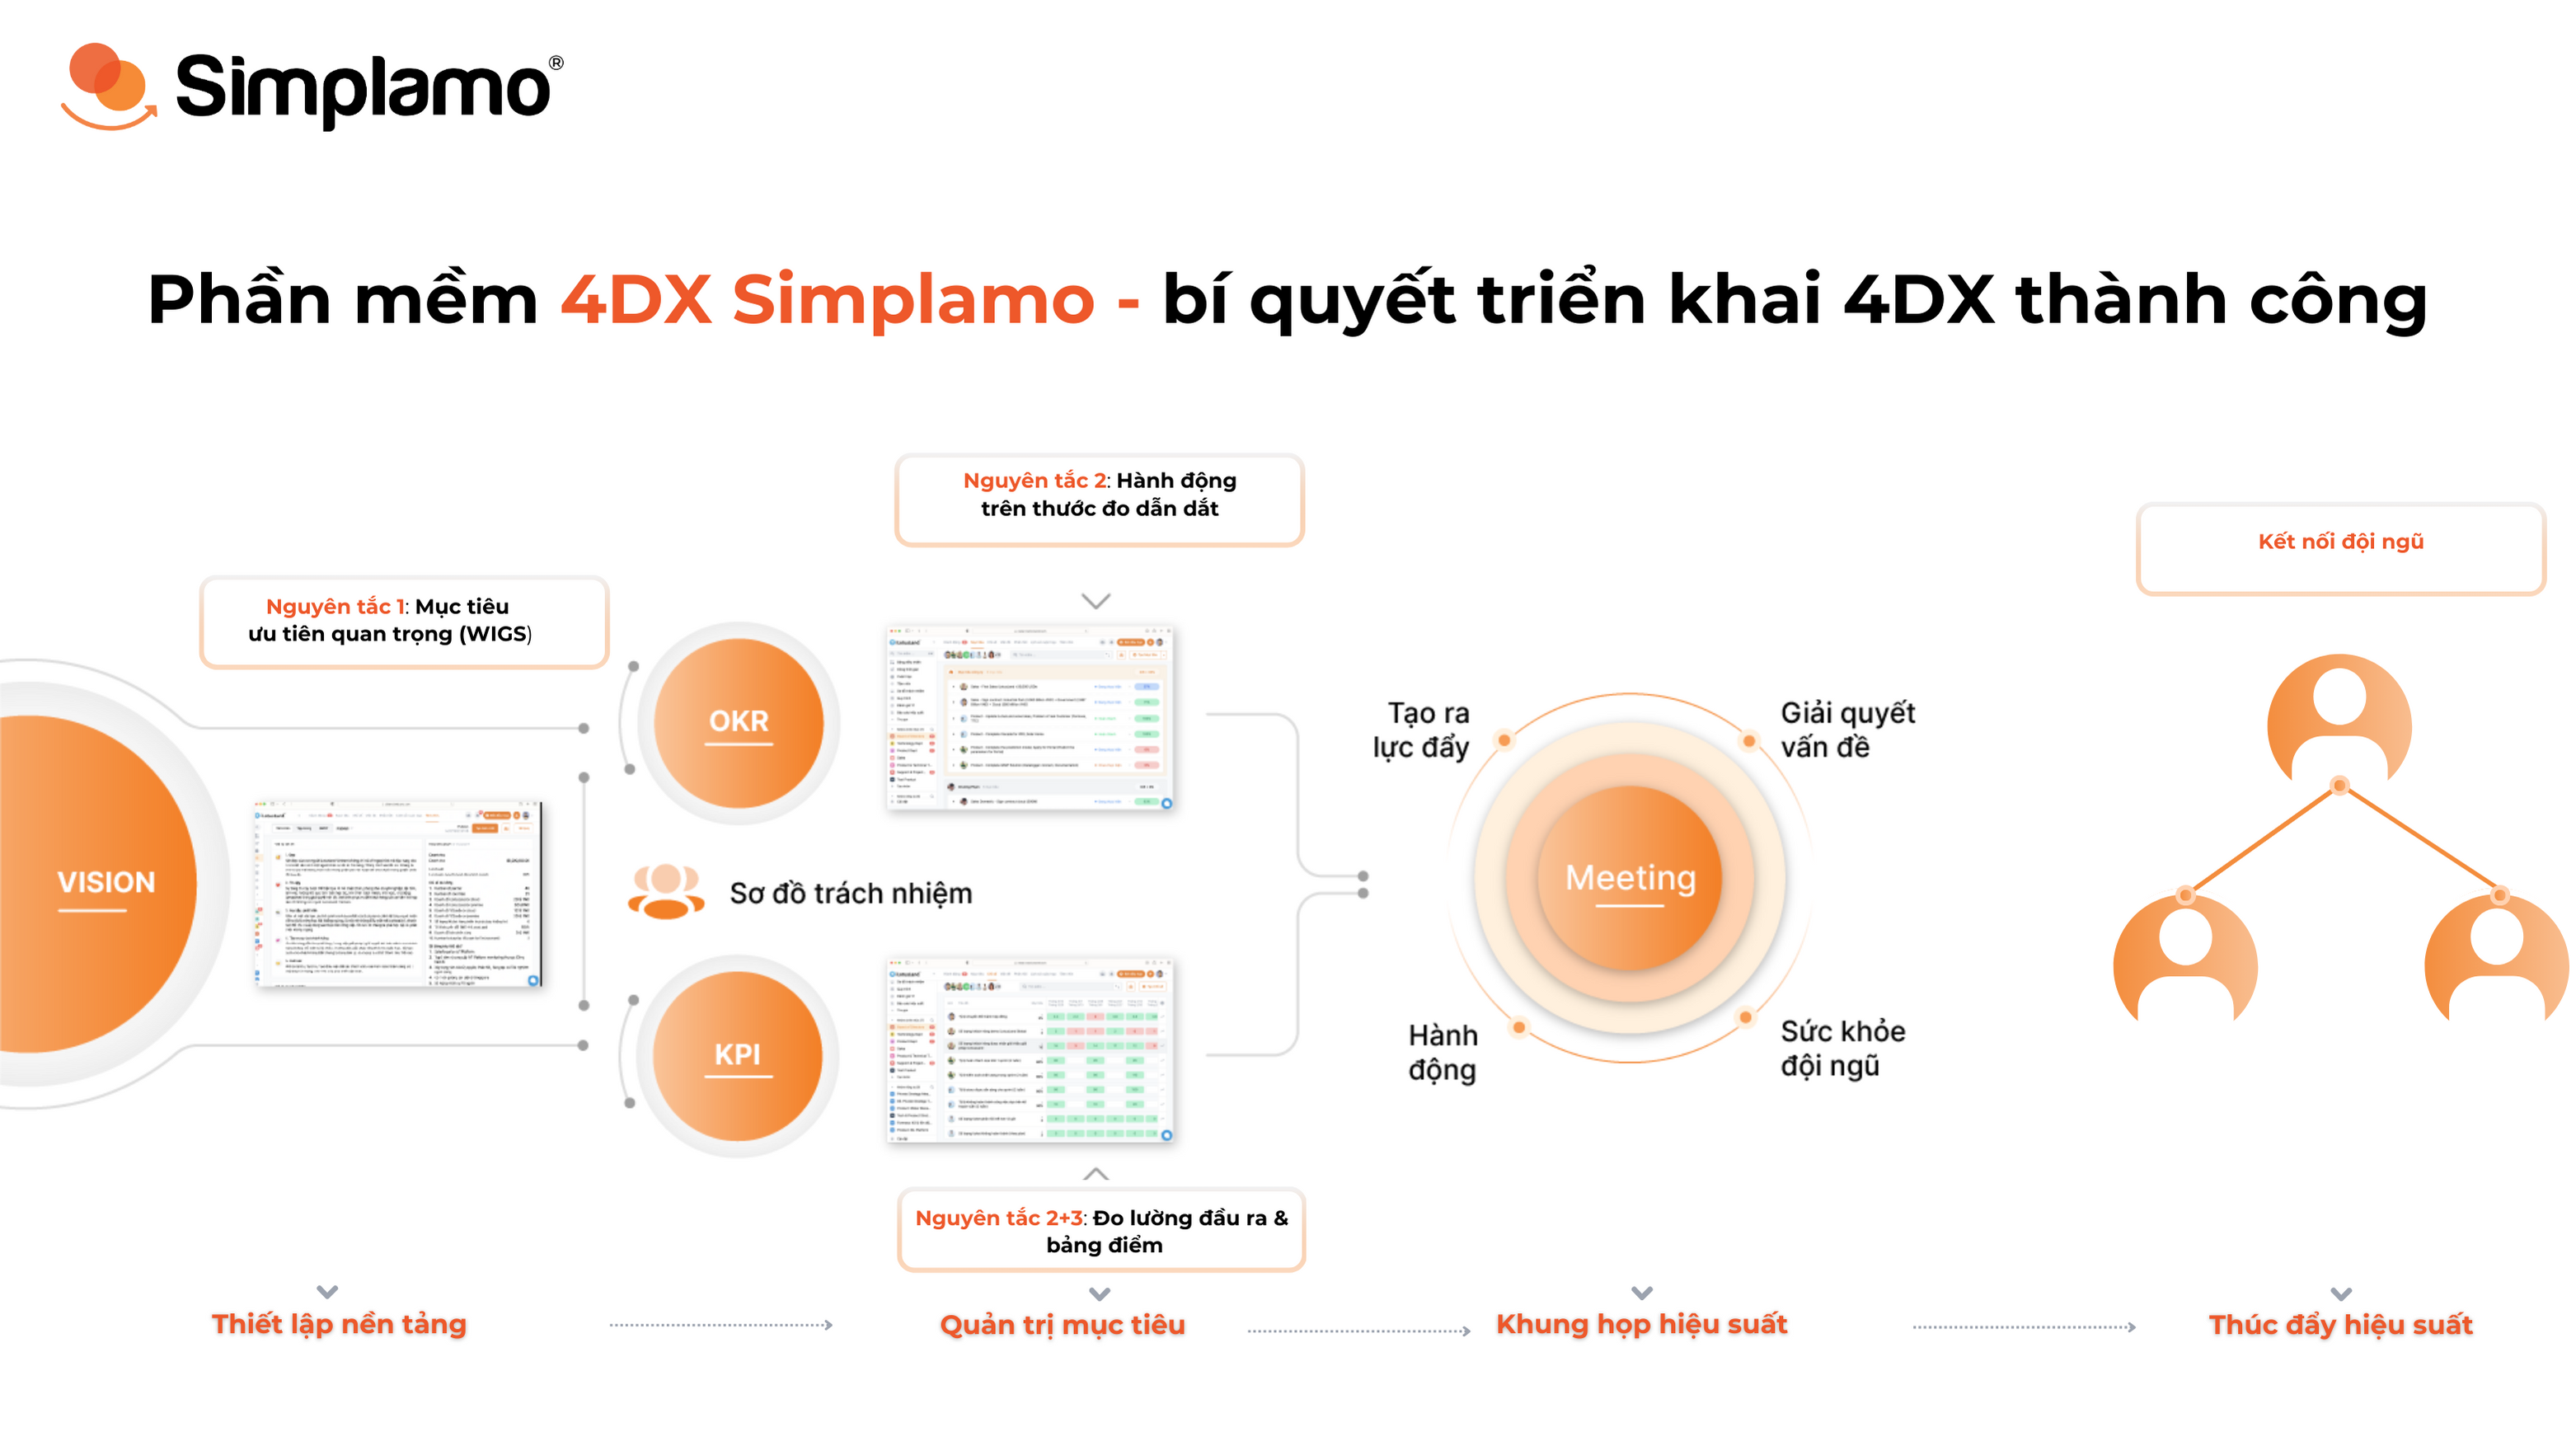 Phần mềm 4DX Simplamo - bí quyết triển khai 4DX thành công